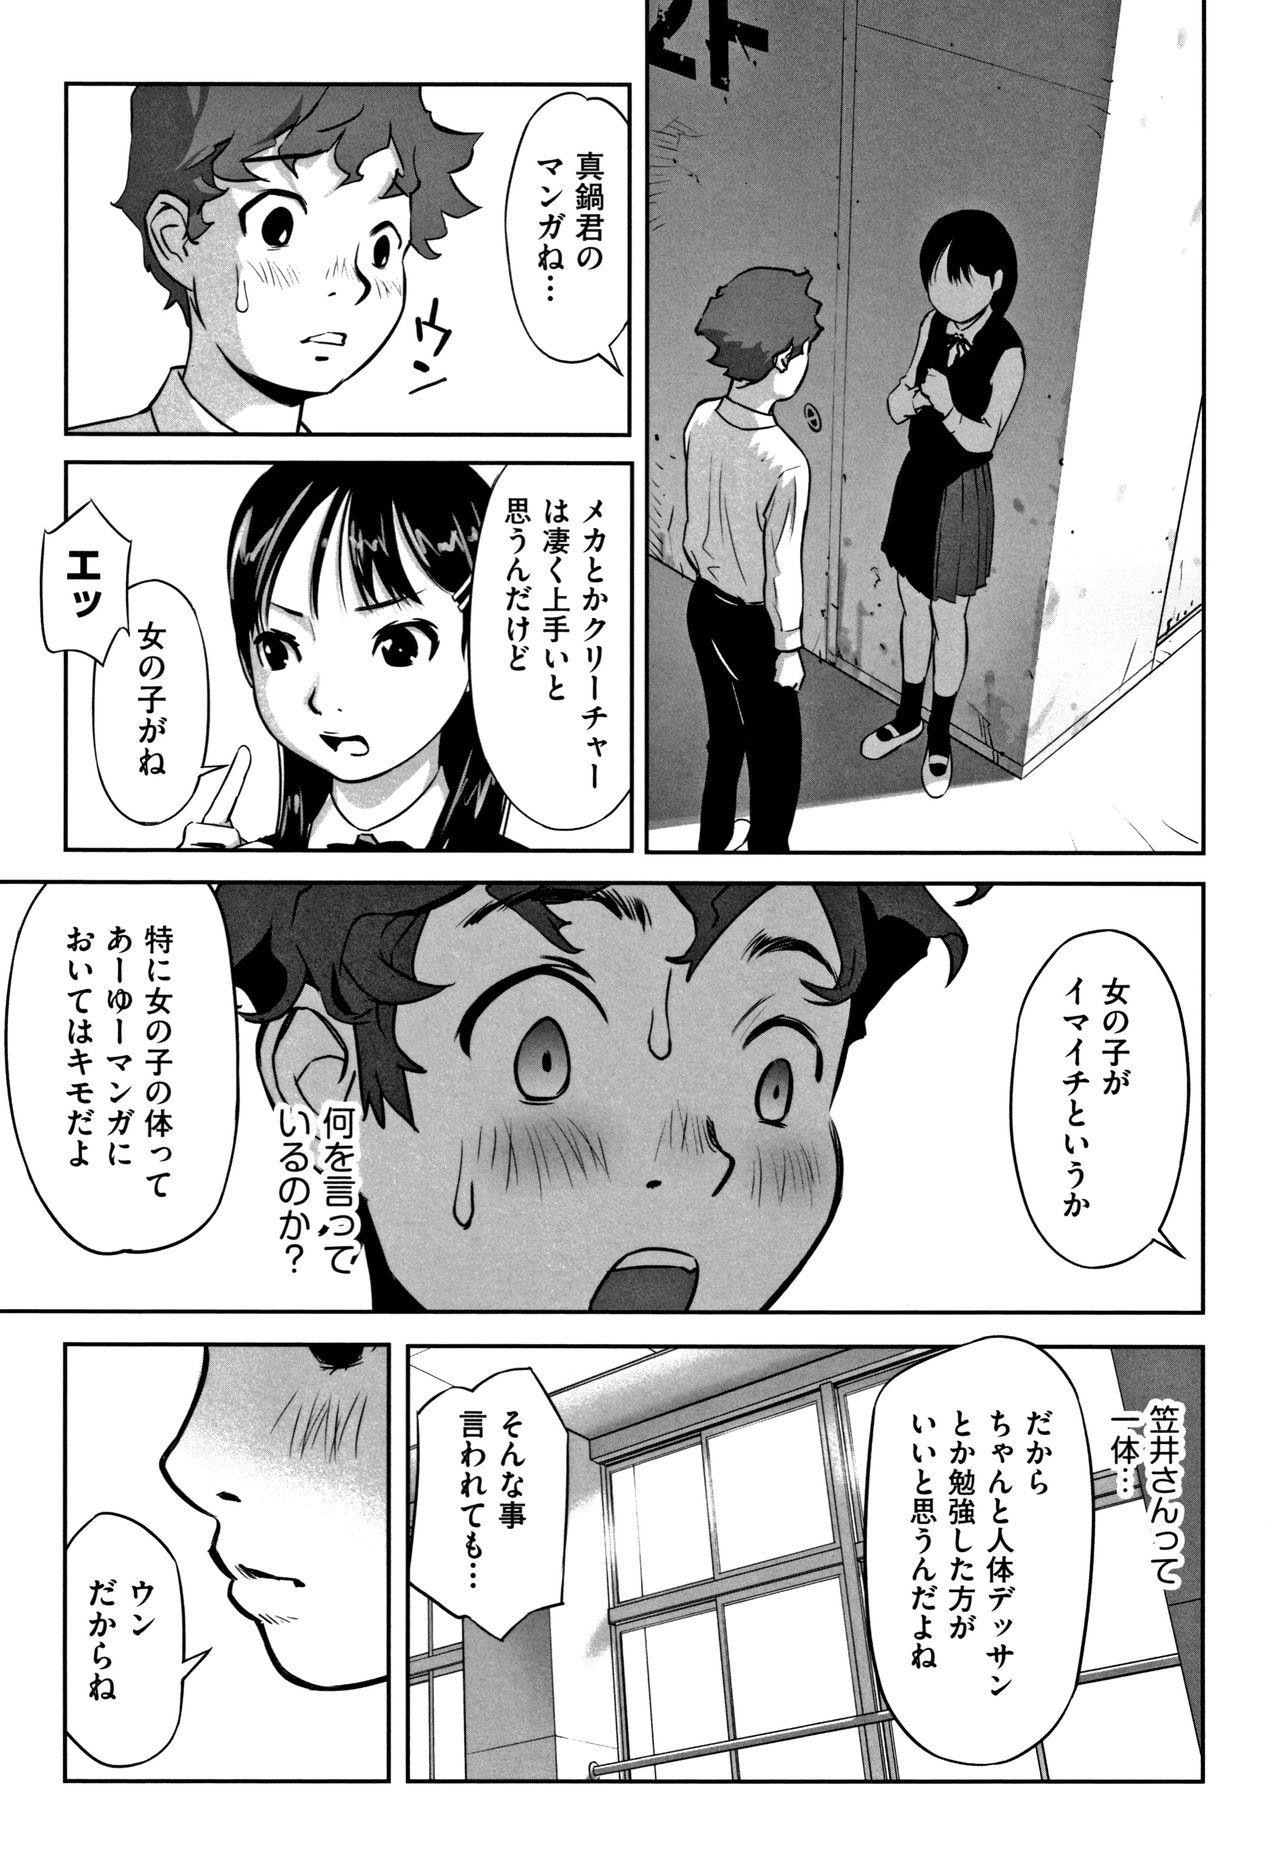 Pounded Otokonoko wa Soko no Kouzou ga Shiritai noda Amature - Page 12